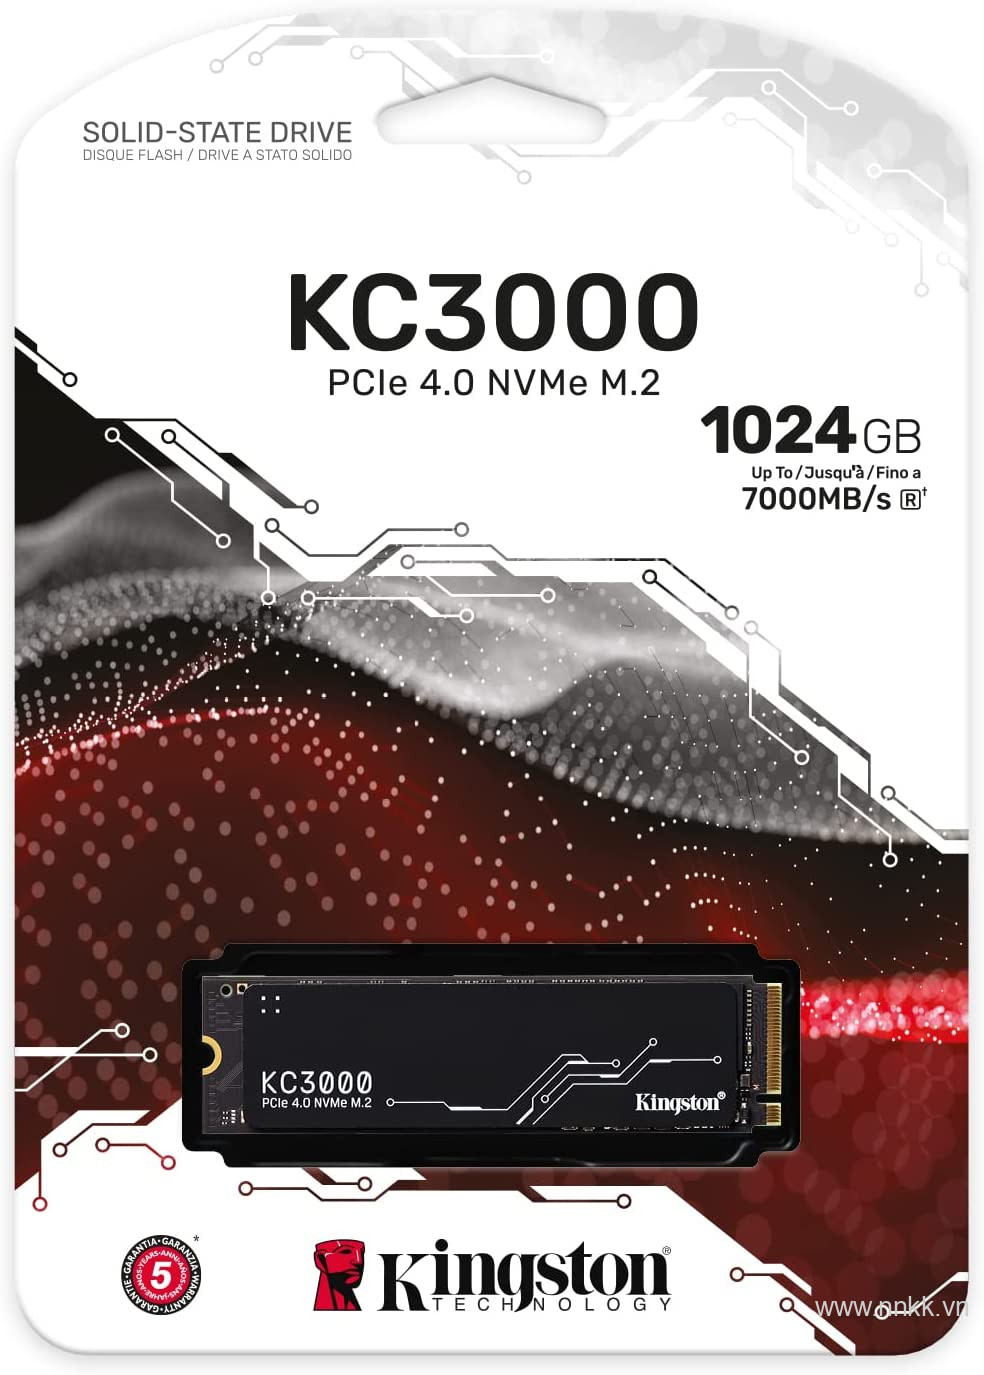 Ổ cứng ssd kingston KC3000 - 1024GB PCIe 4.0 NVMe M.2 SSD